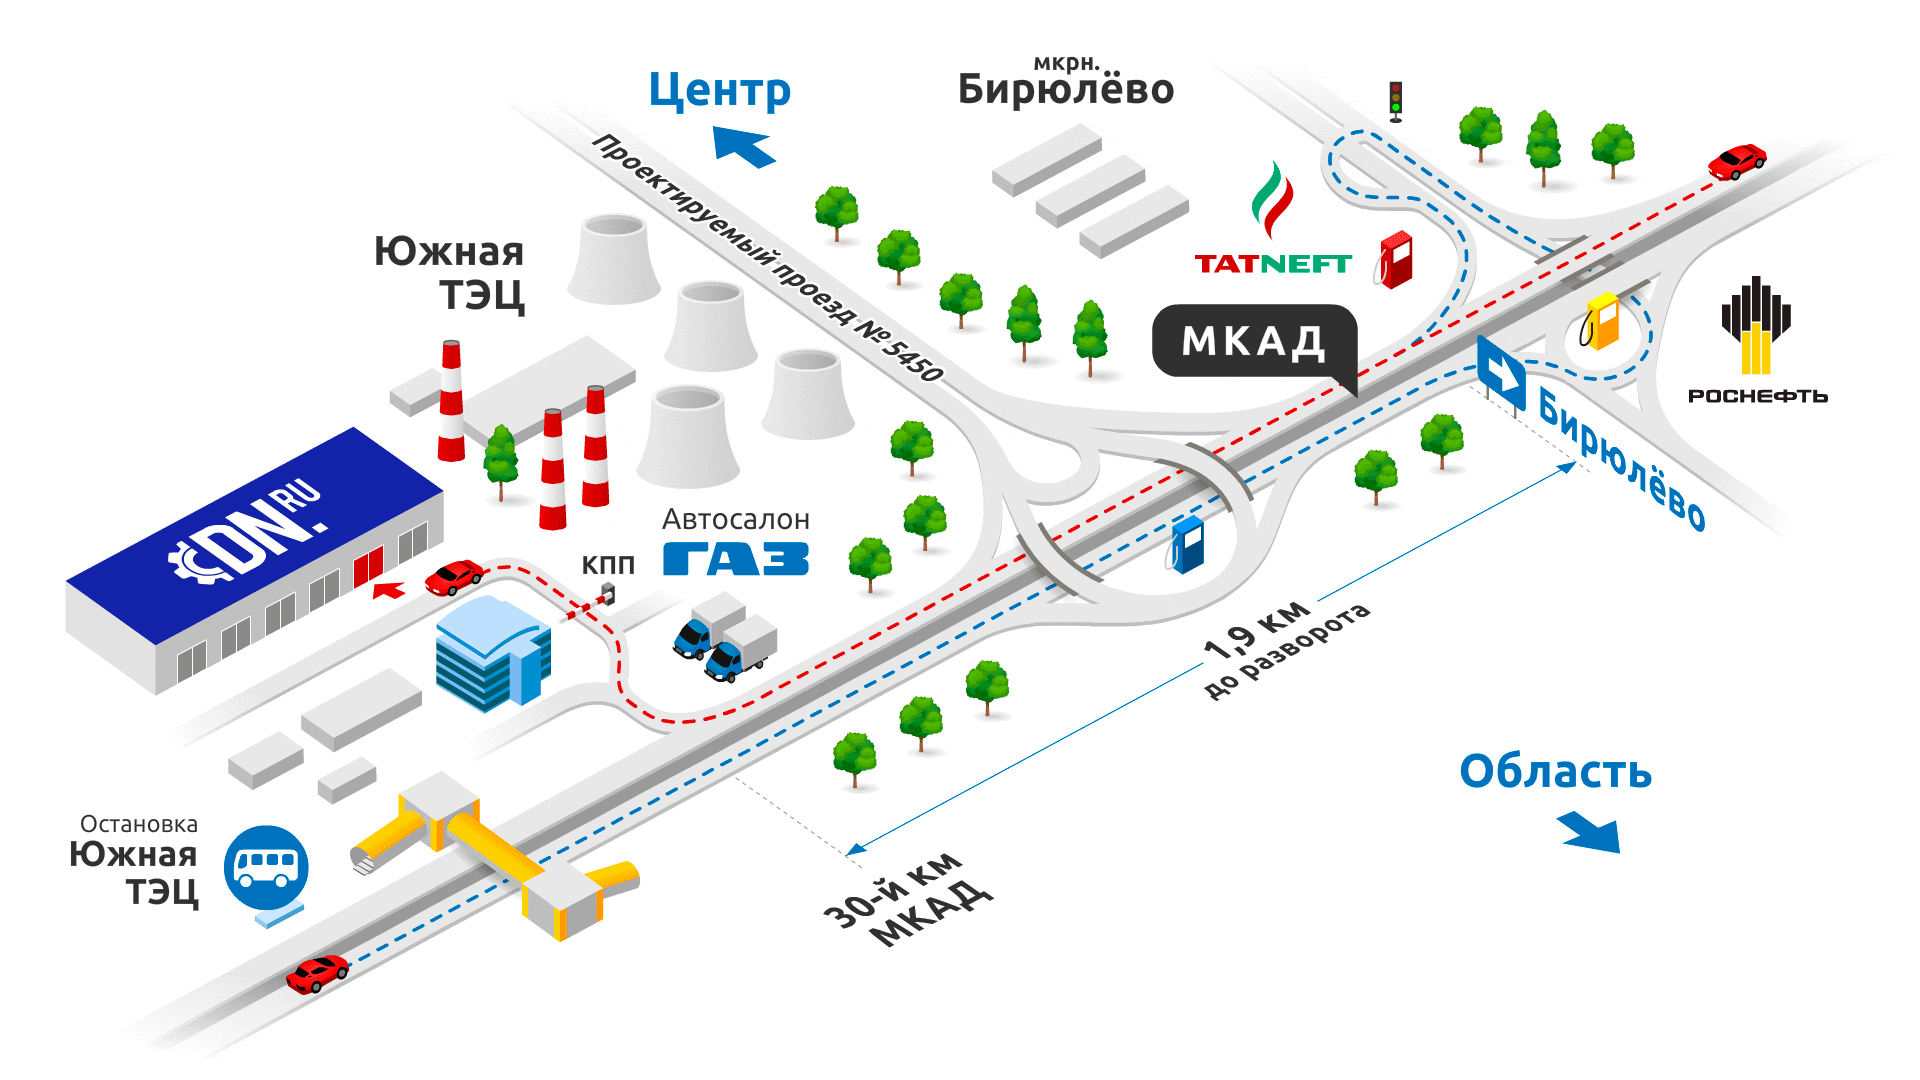 Схема проезда по МКАД